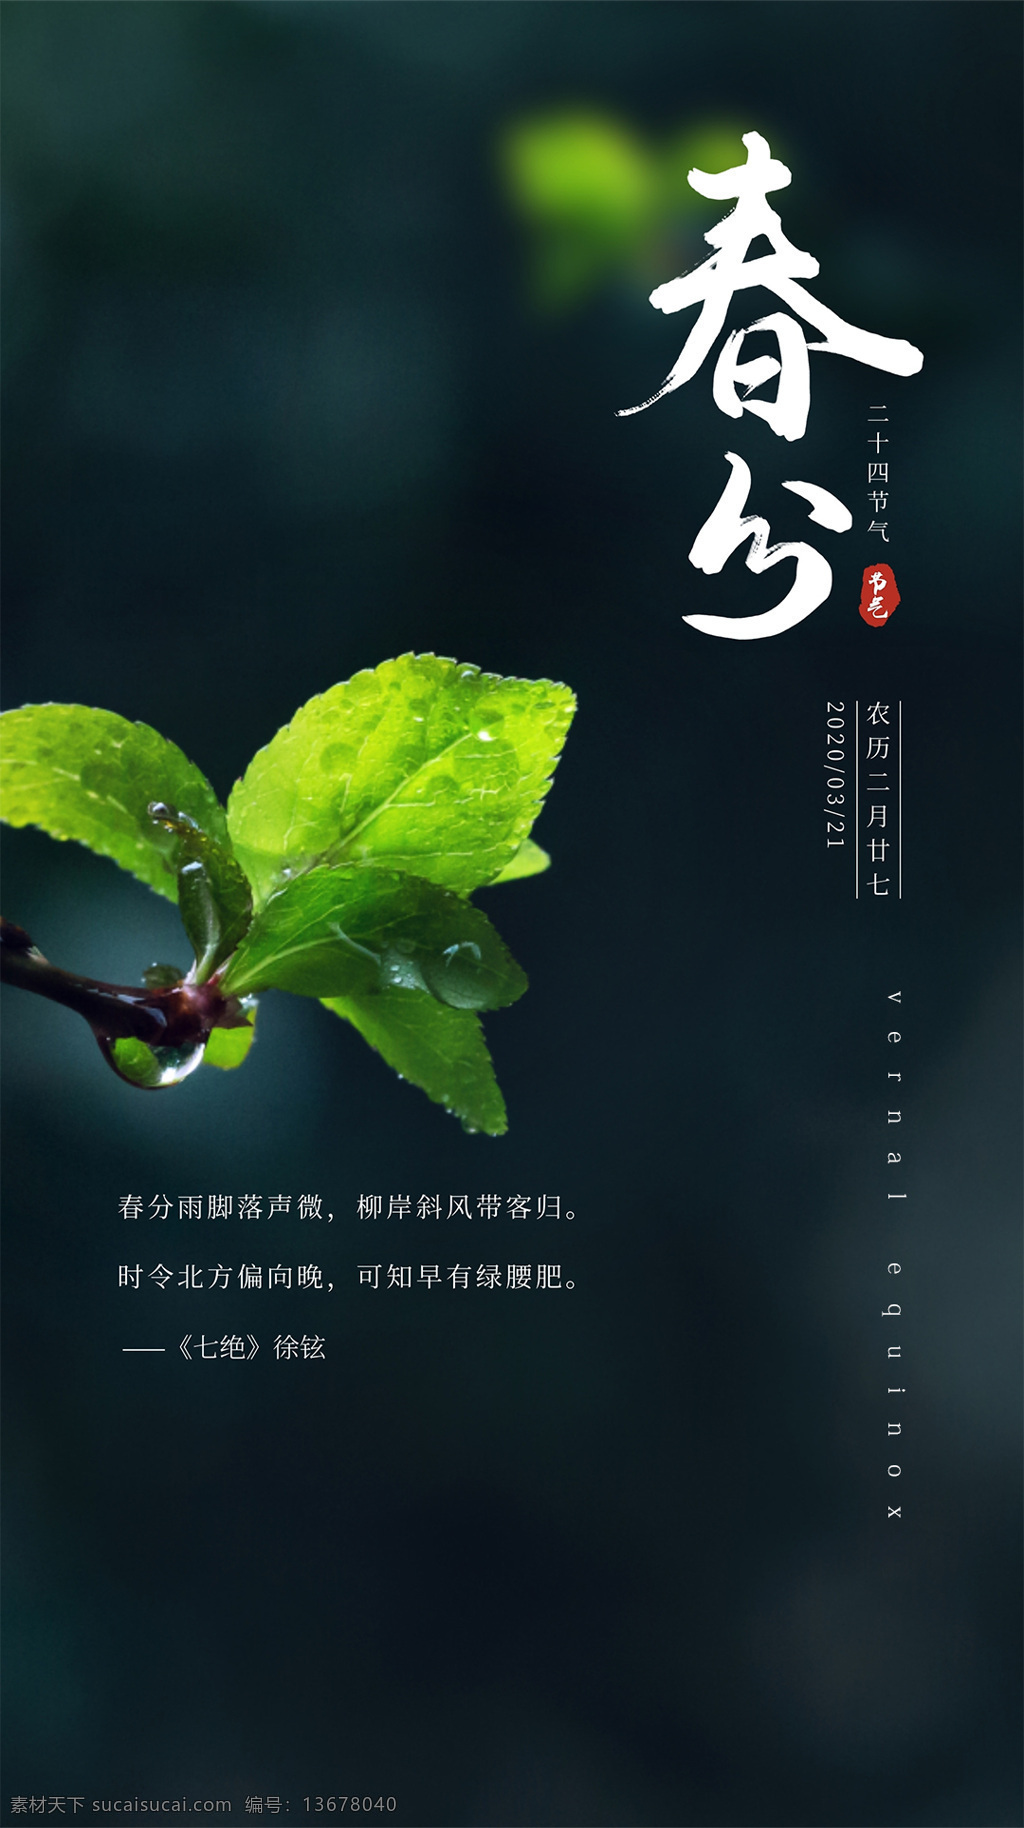 春分 海报 节气 微信 公众号 二十四 绿叶 文化艺术 节日庆祝